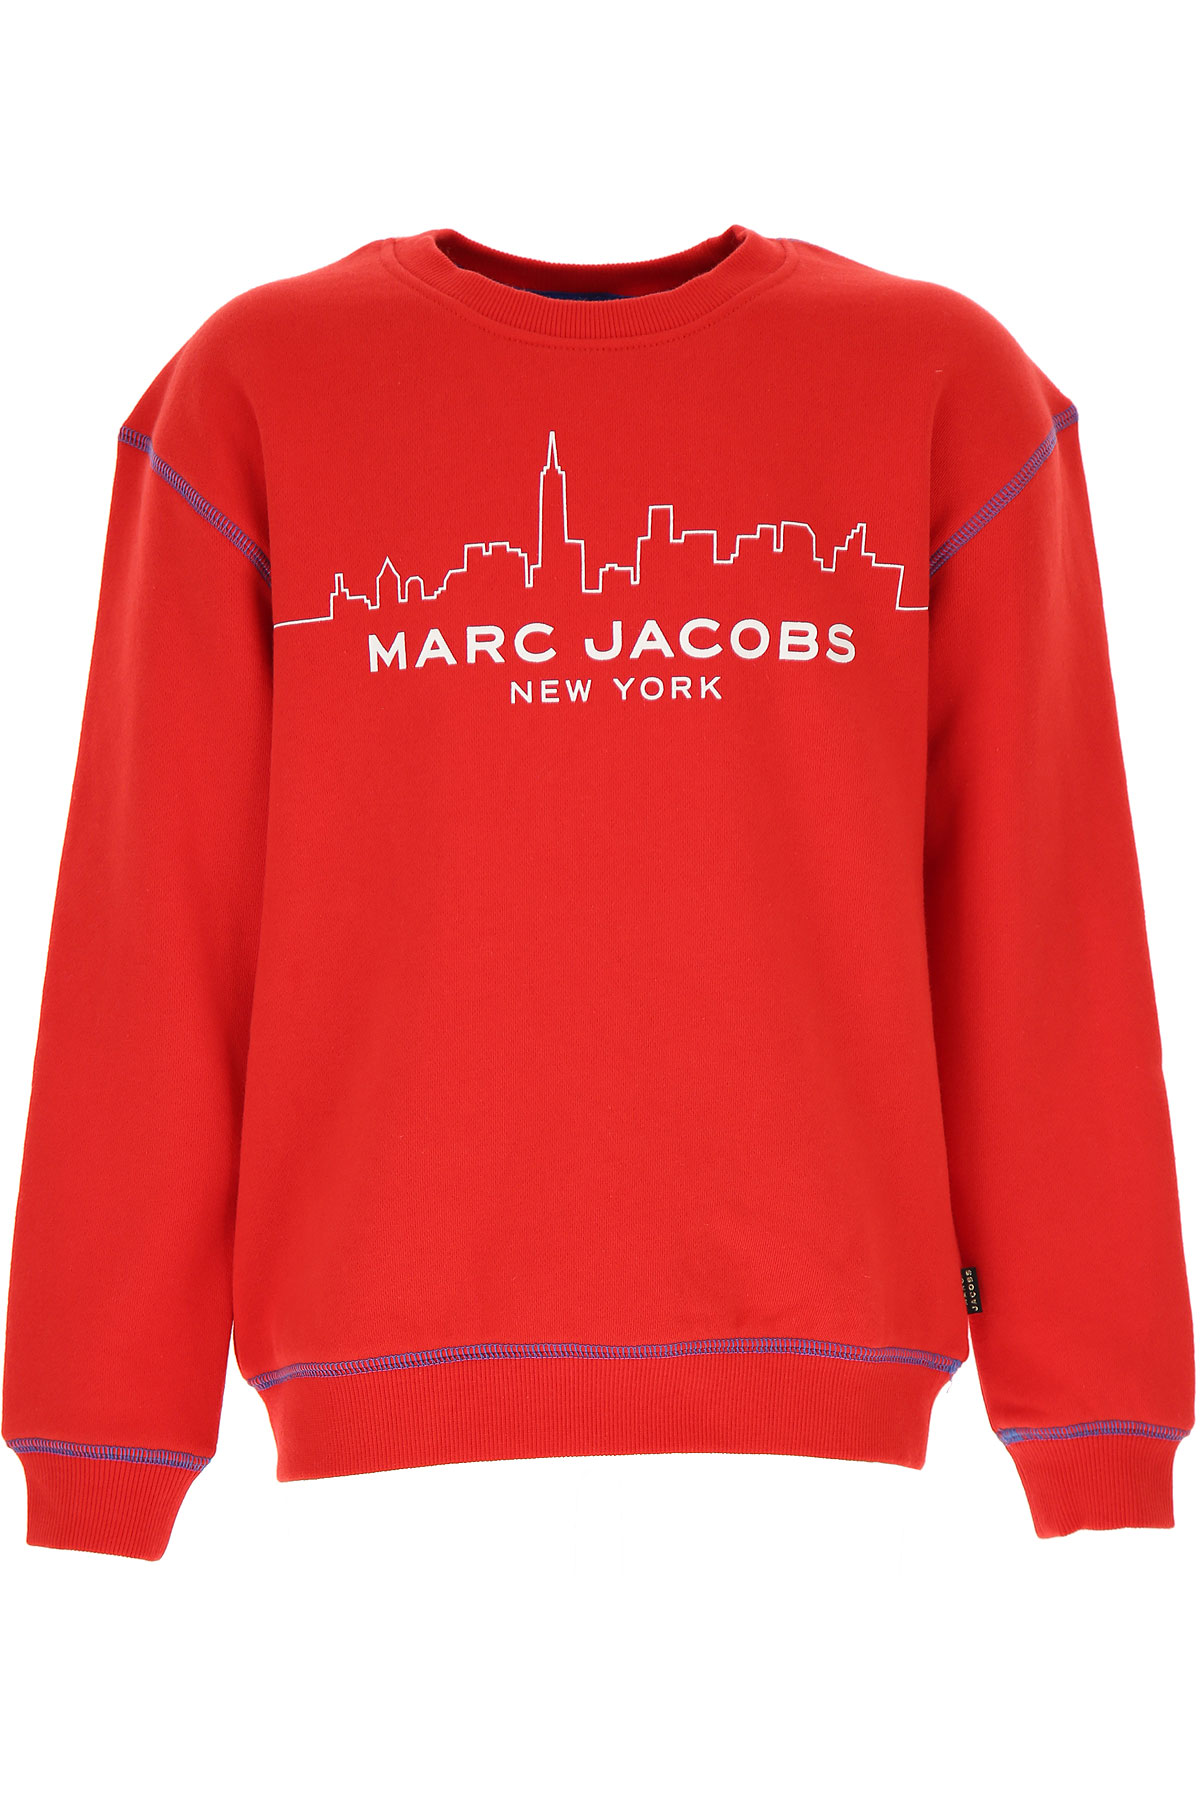 Marc Jacobs Kinder Sweatshirt & Kapuzenpullover für Jungen Günstig im Sale, Rot, Baumwolle, 2017, 10Y 12Y 14Y 2Y 3Y 4Y 5Y 6Y 8Y